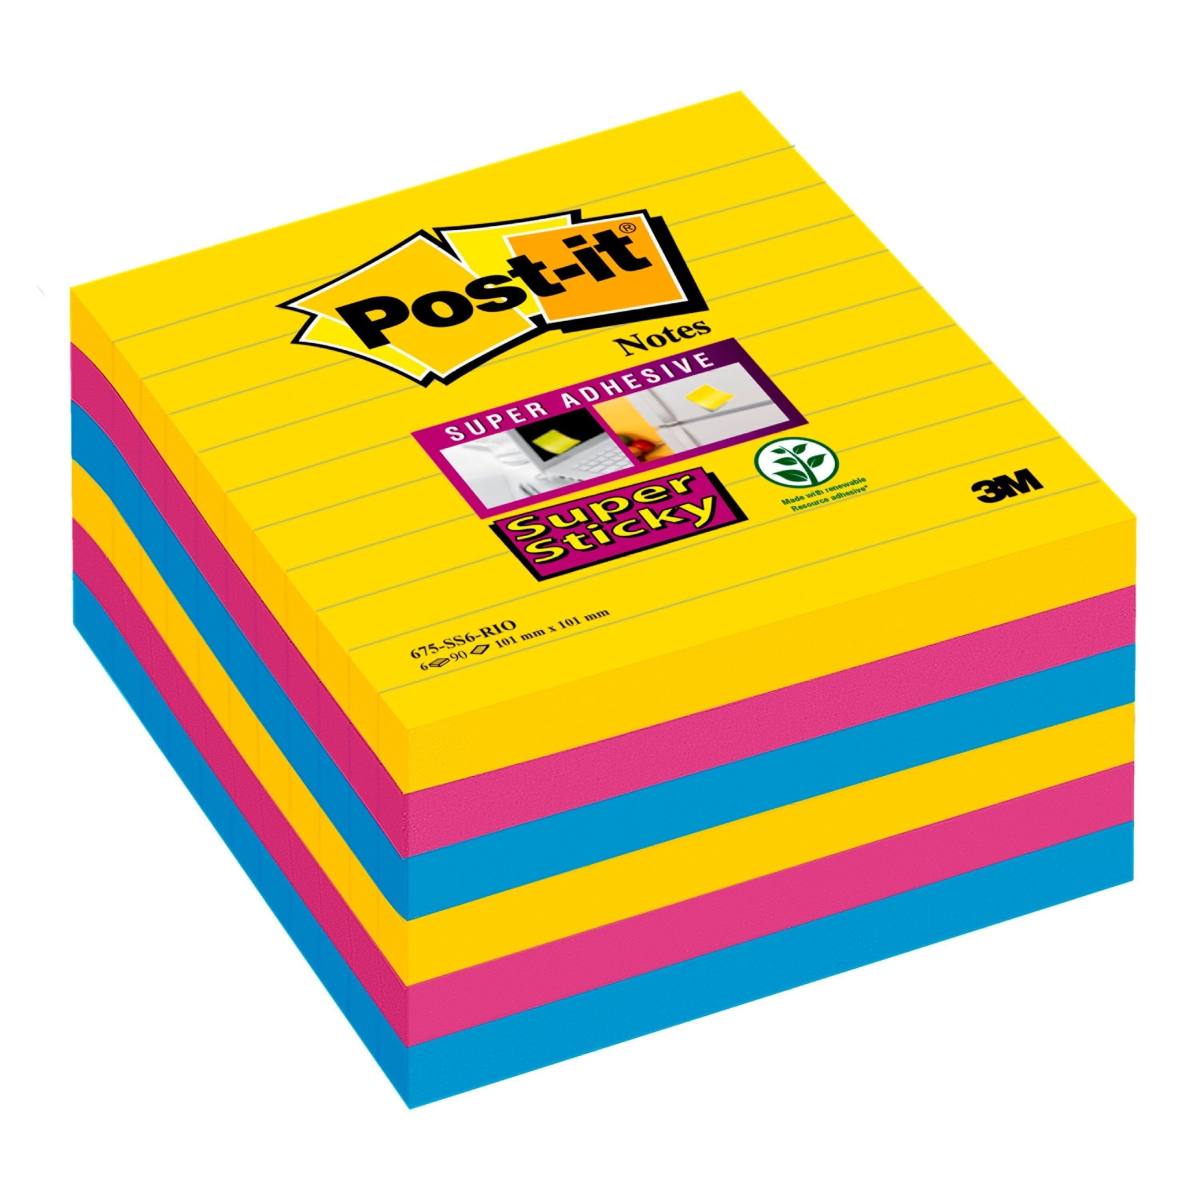 3M Post-it Super Sticky Notes 675-S6R, 6 blocs de 90 feuilles, Rio de Janeiro Collection : ultra jaune, -bleu, -rose, 101 mm x 101 mm, ligné, certifié PEFC